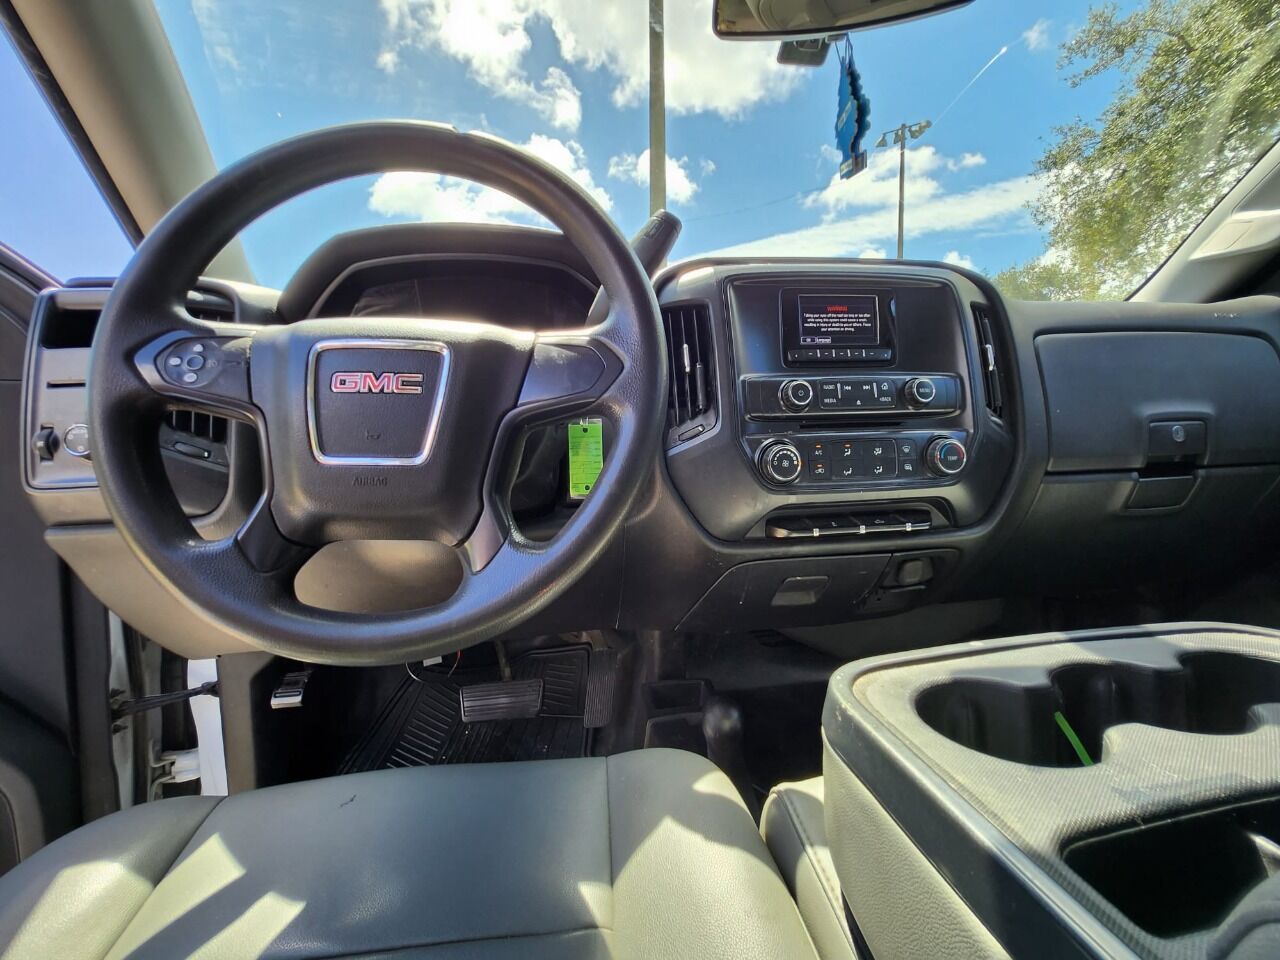 2014 GMC Sierra Pickup - $17,995